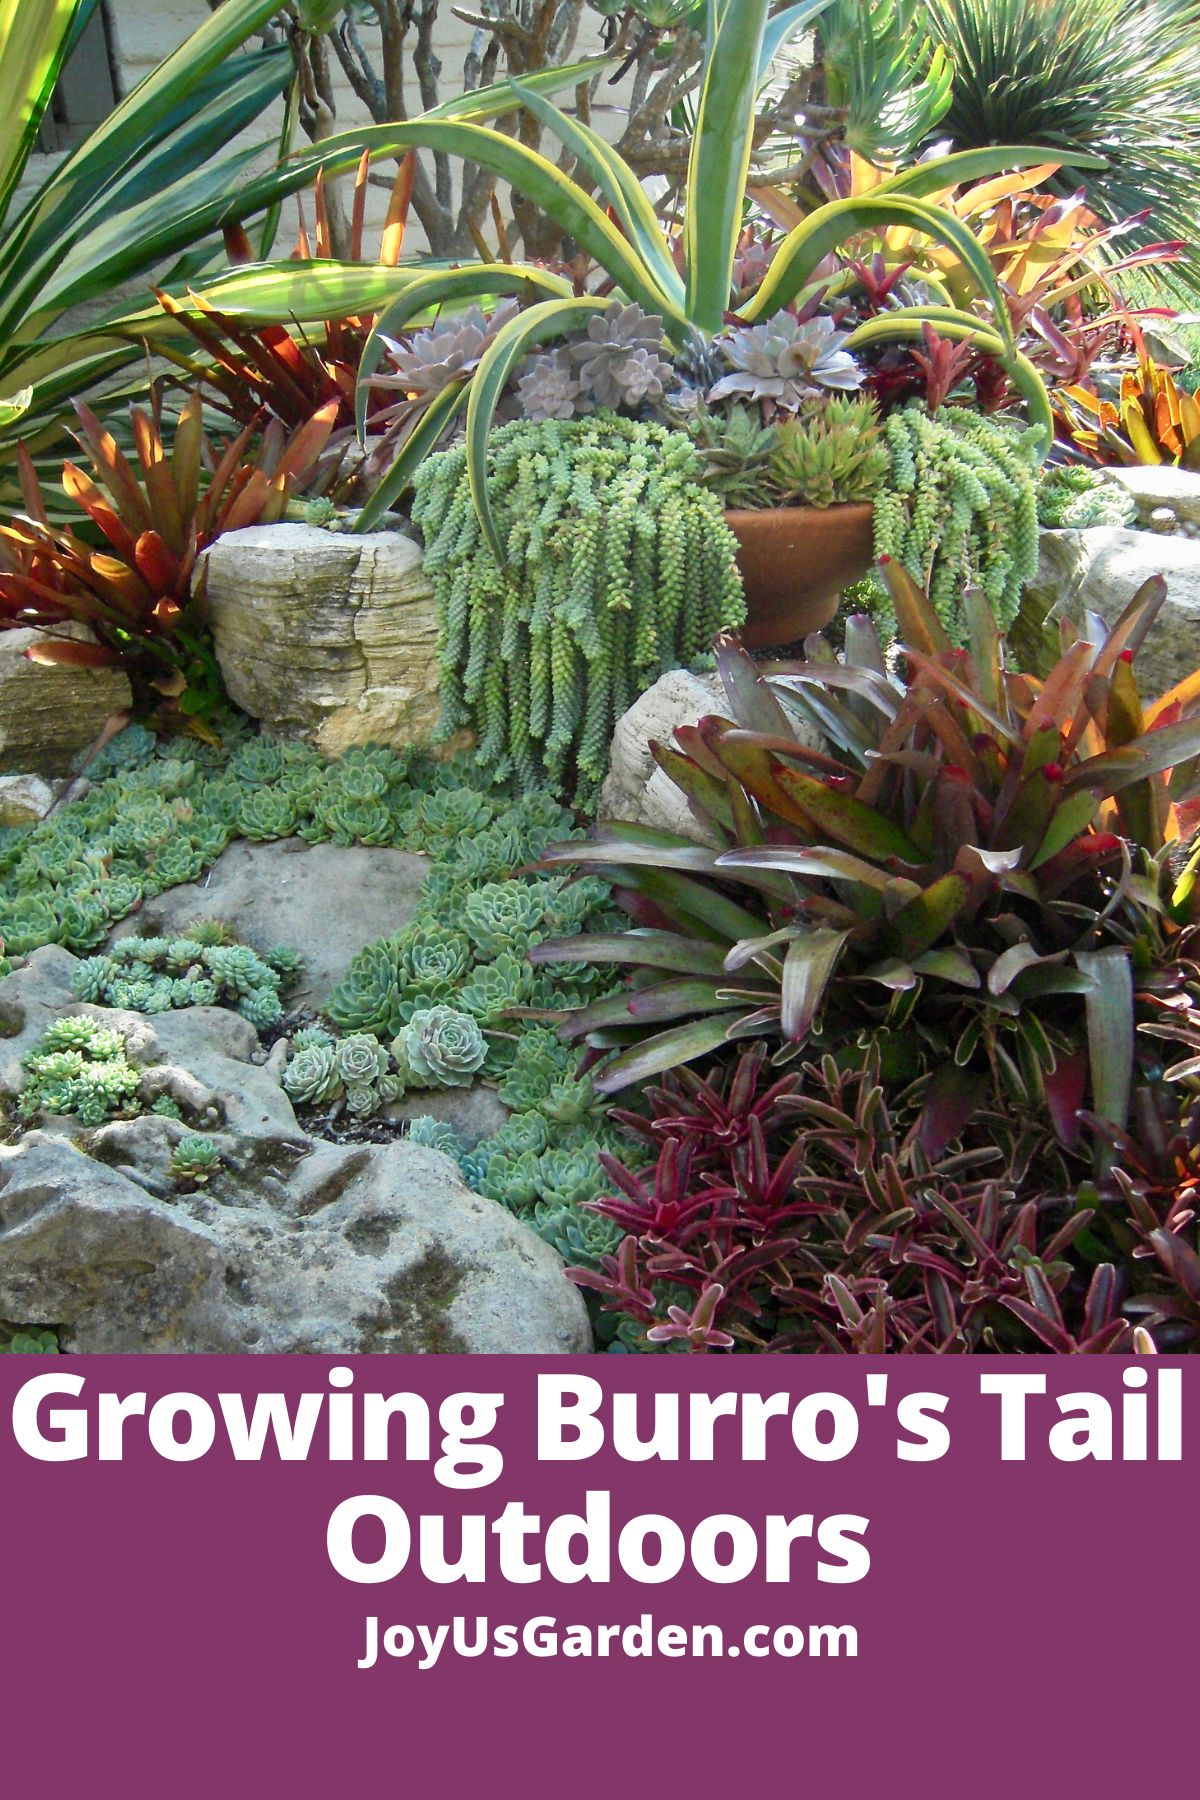  Burro ၏အမြီးအပင်- Sedum Morganianum အပြင်ဘက်တွင်ကြီးထွားလာခြင်း